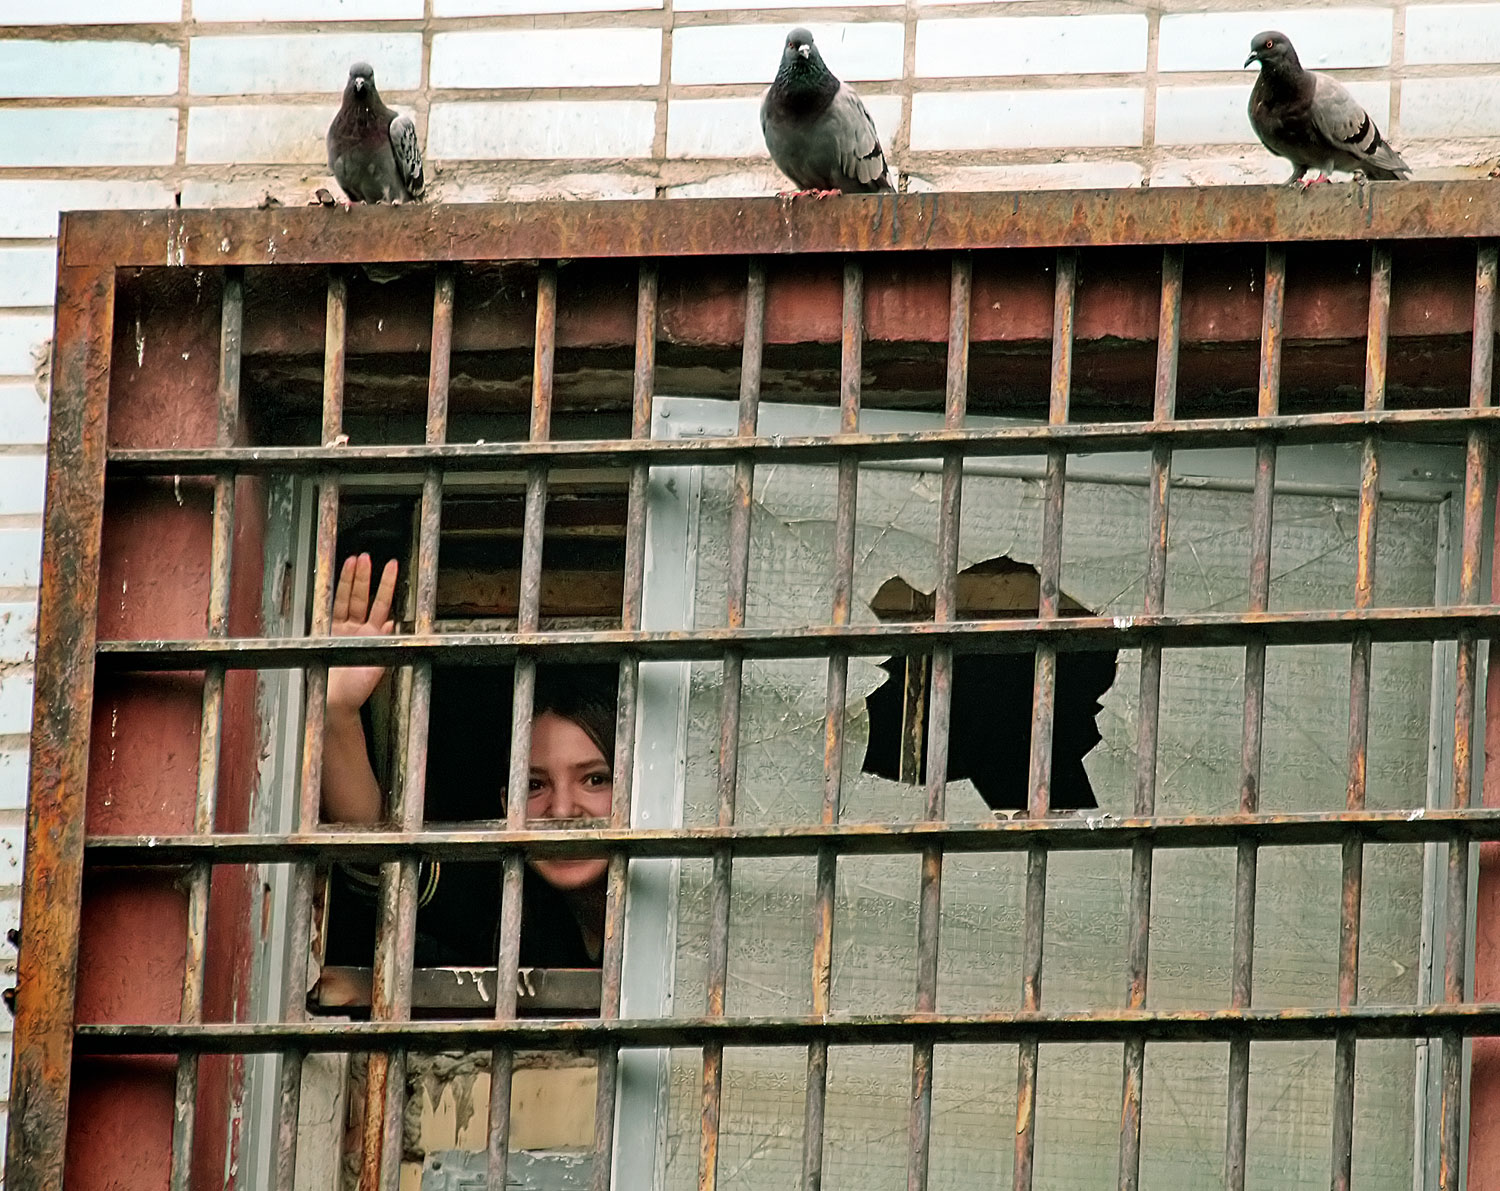 Minszk, 2011: villámcsődület őrizetbe vett résztvevője integet a börtön ablakából